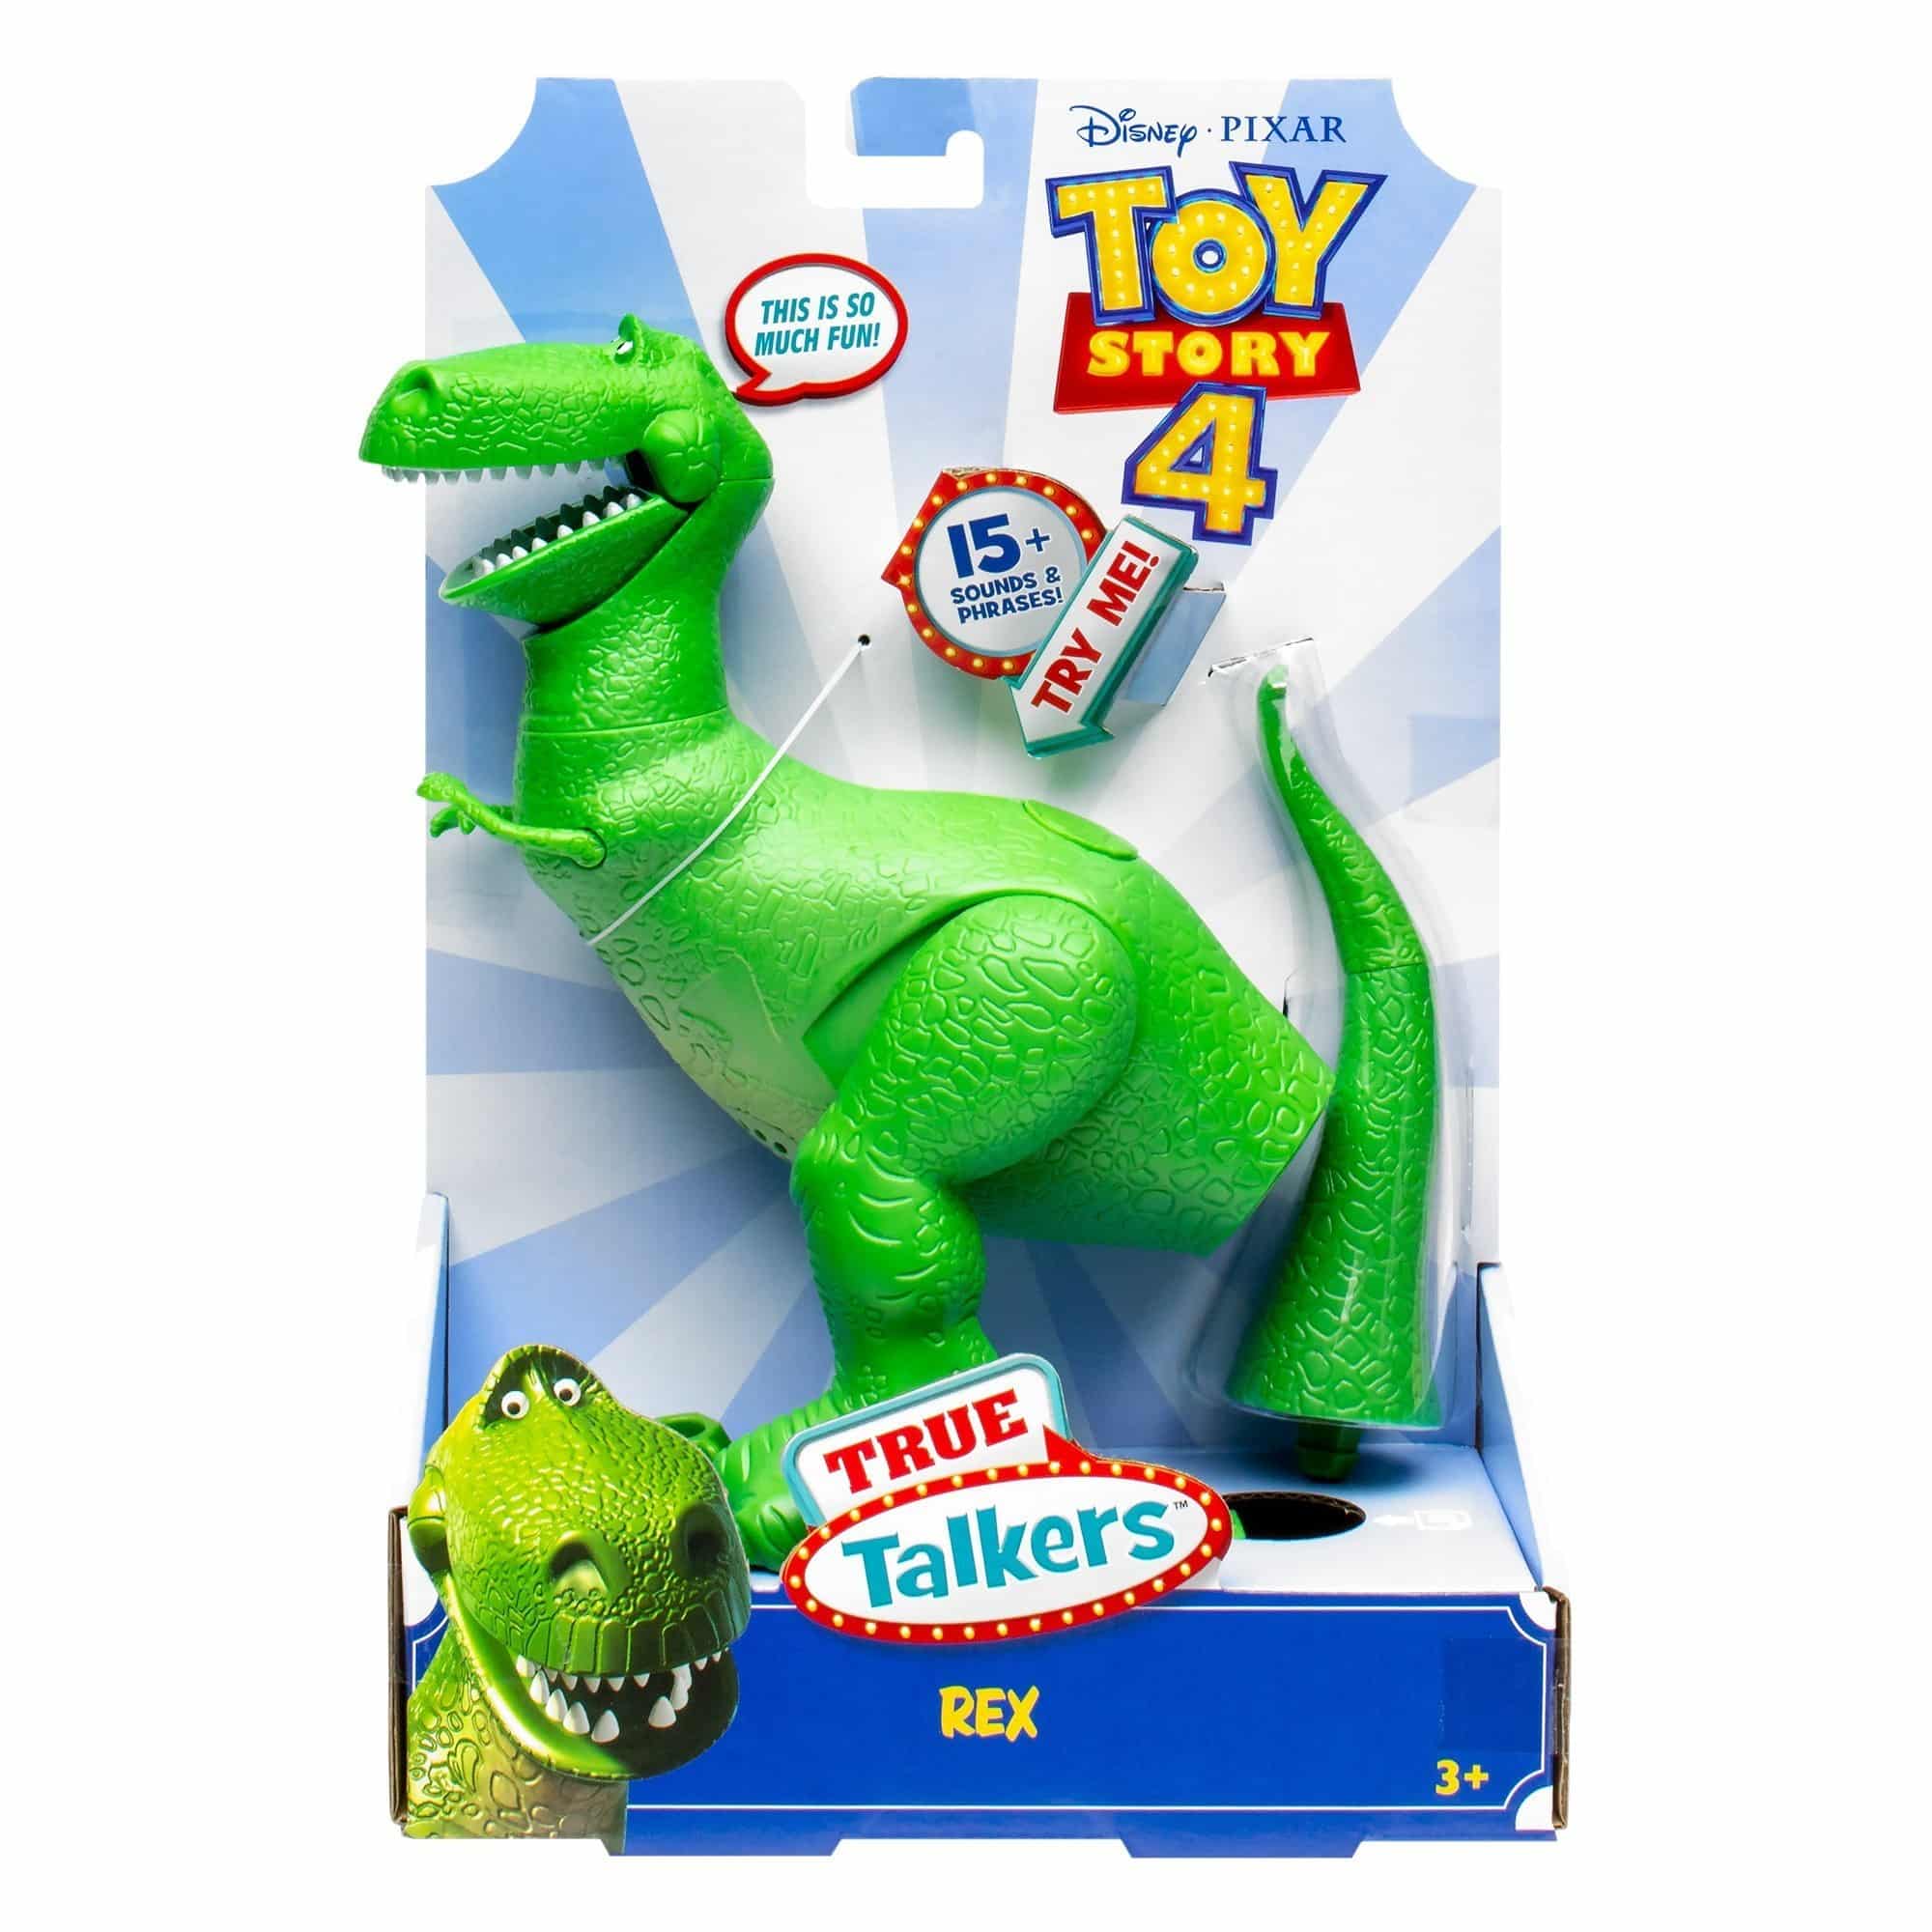 Toy Story 4 - True Talkers - Rex